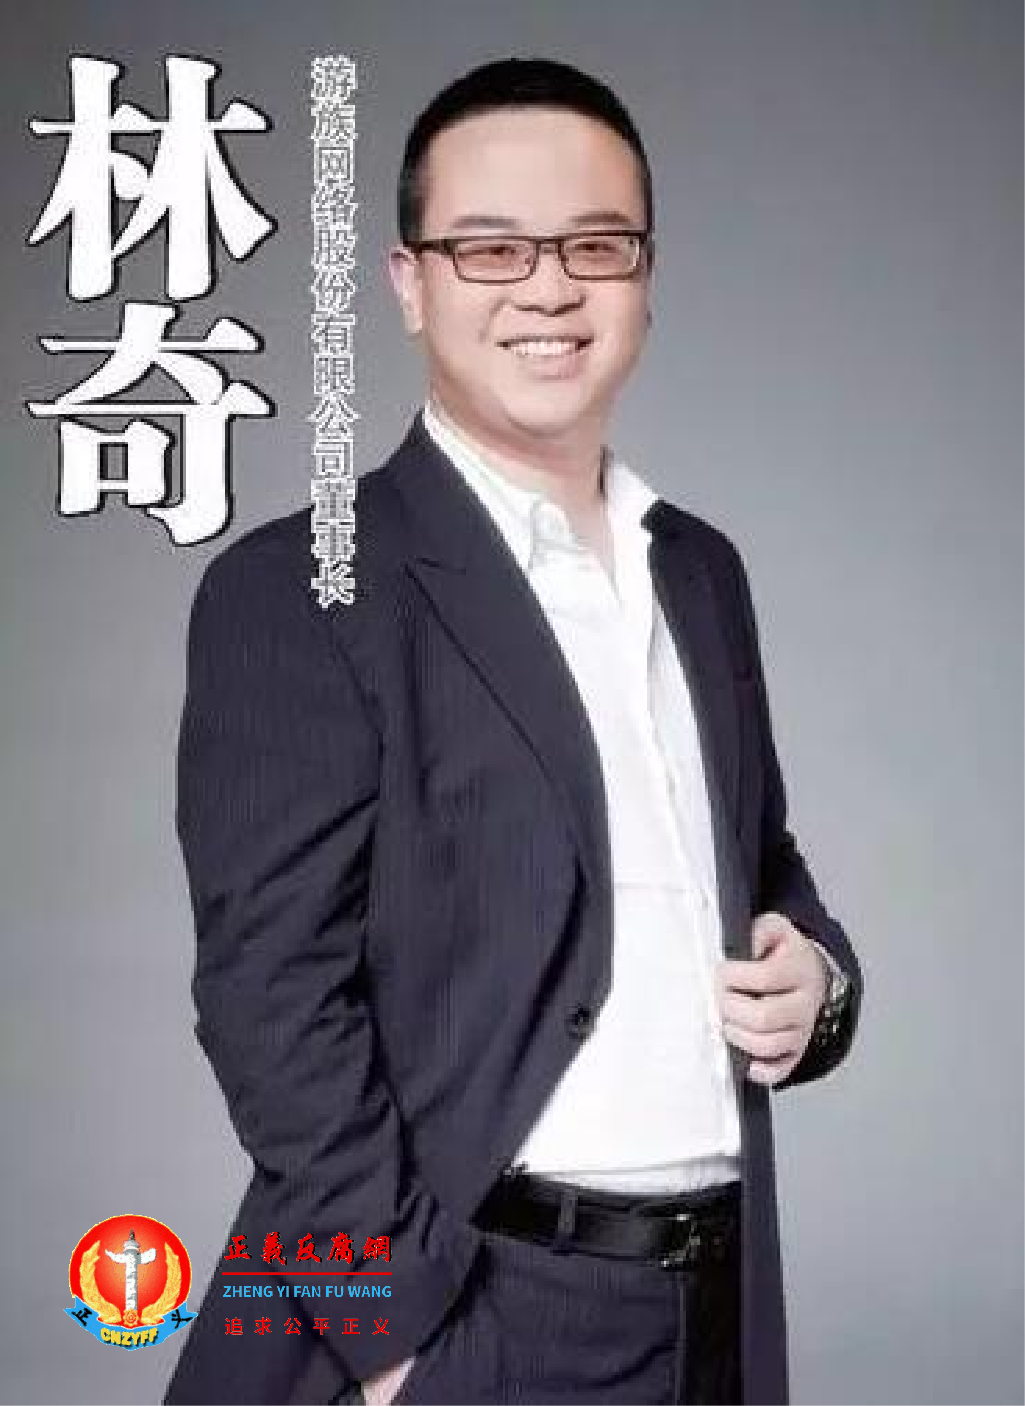 遭投毒的游族网络董事长林奇于12月25日逝世。.png